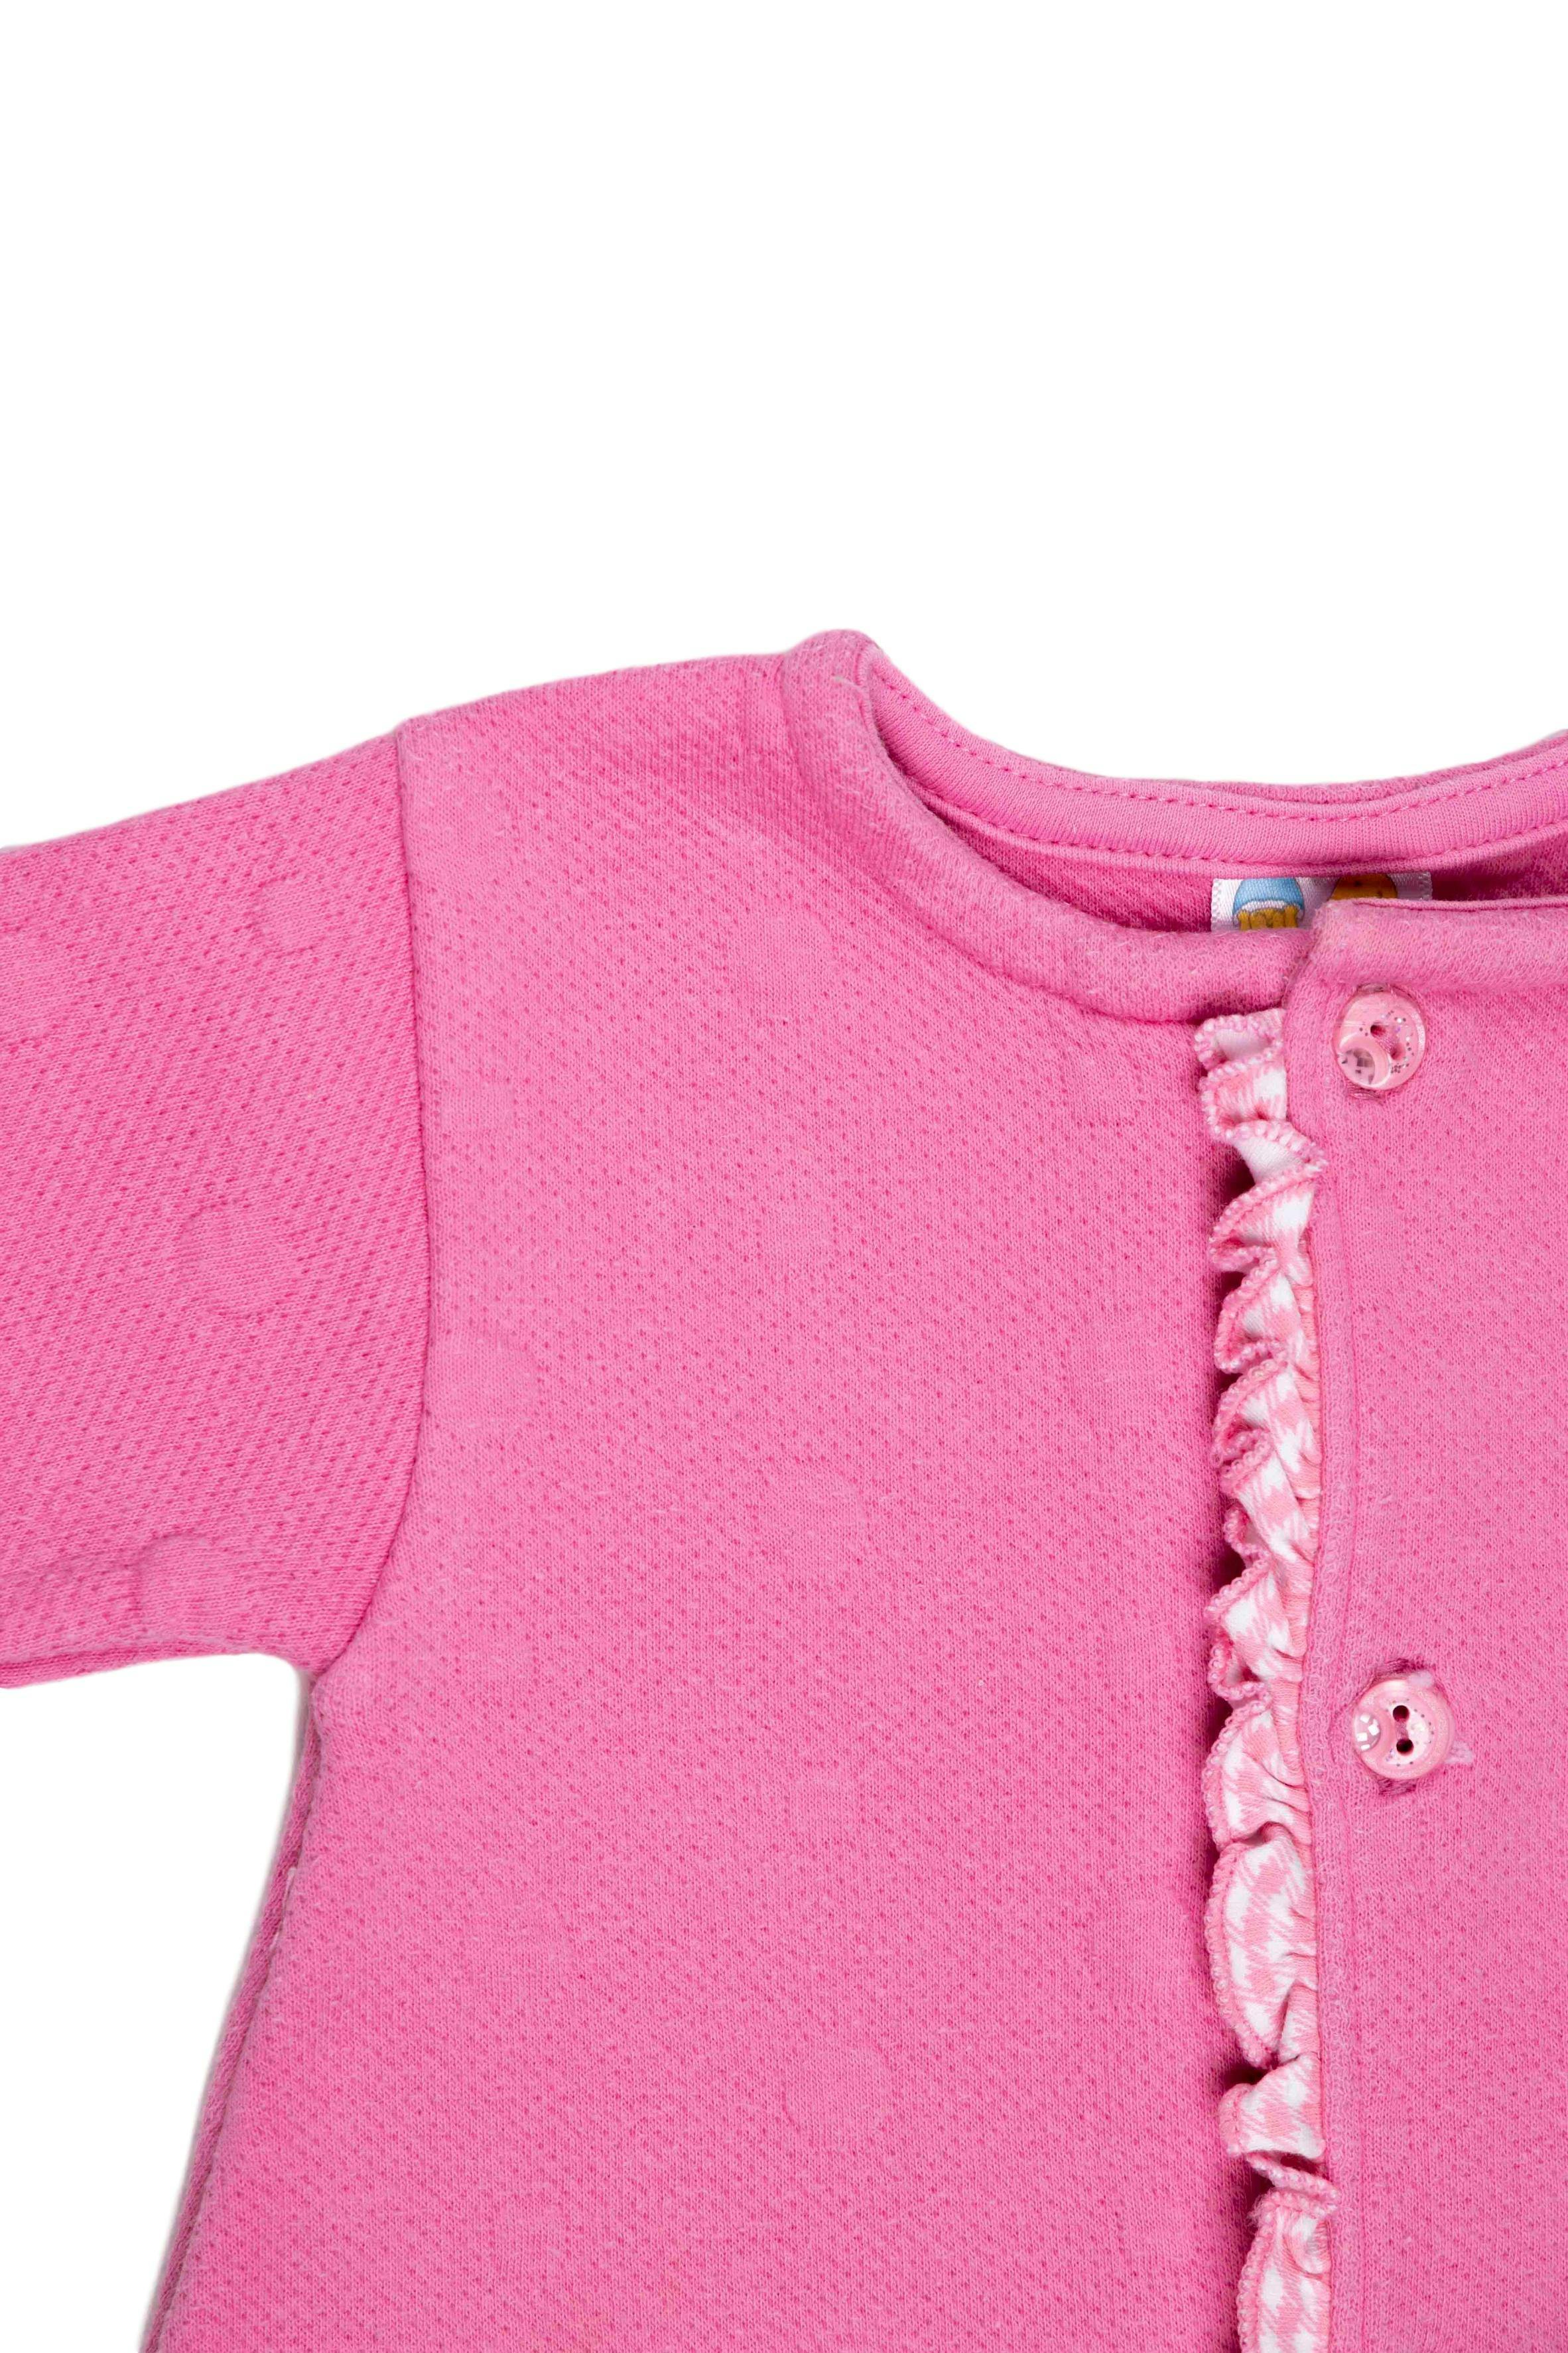 Saquito rosa grueso 100% algodón, con animalitos y florcita bordada - Evy Tony